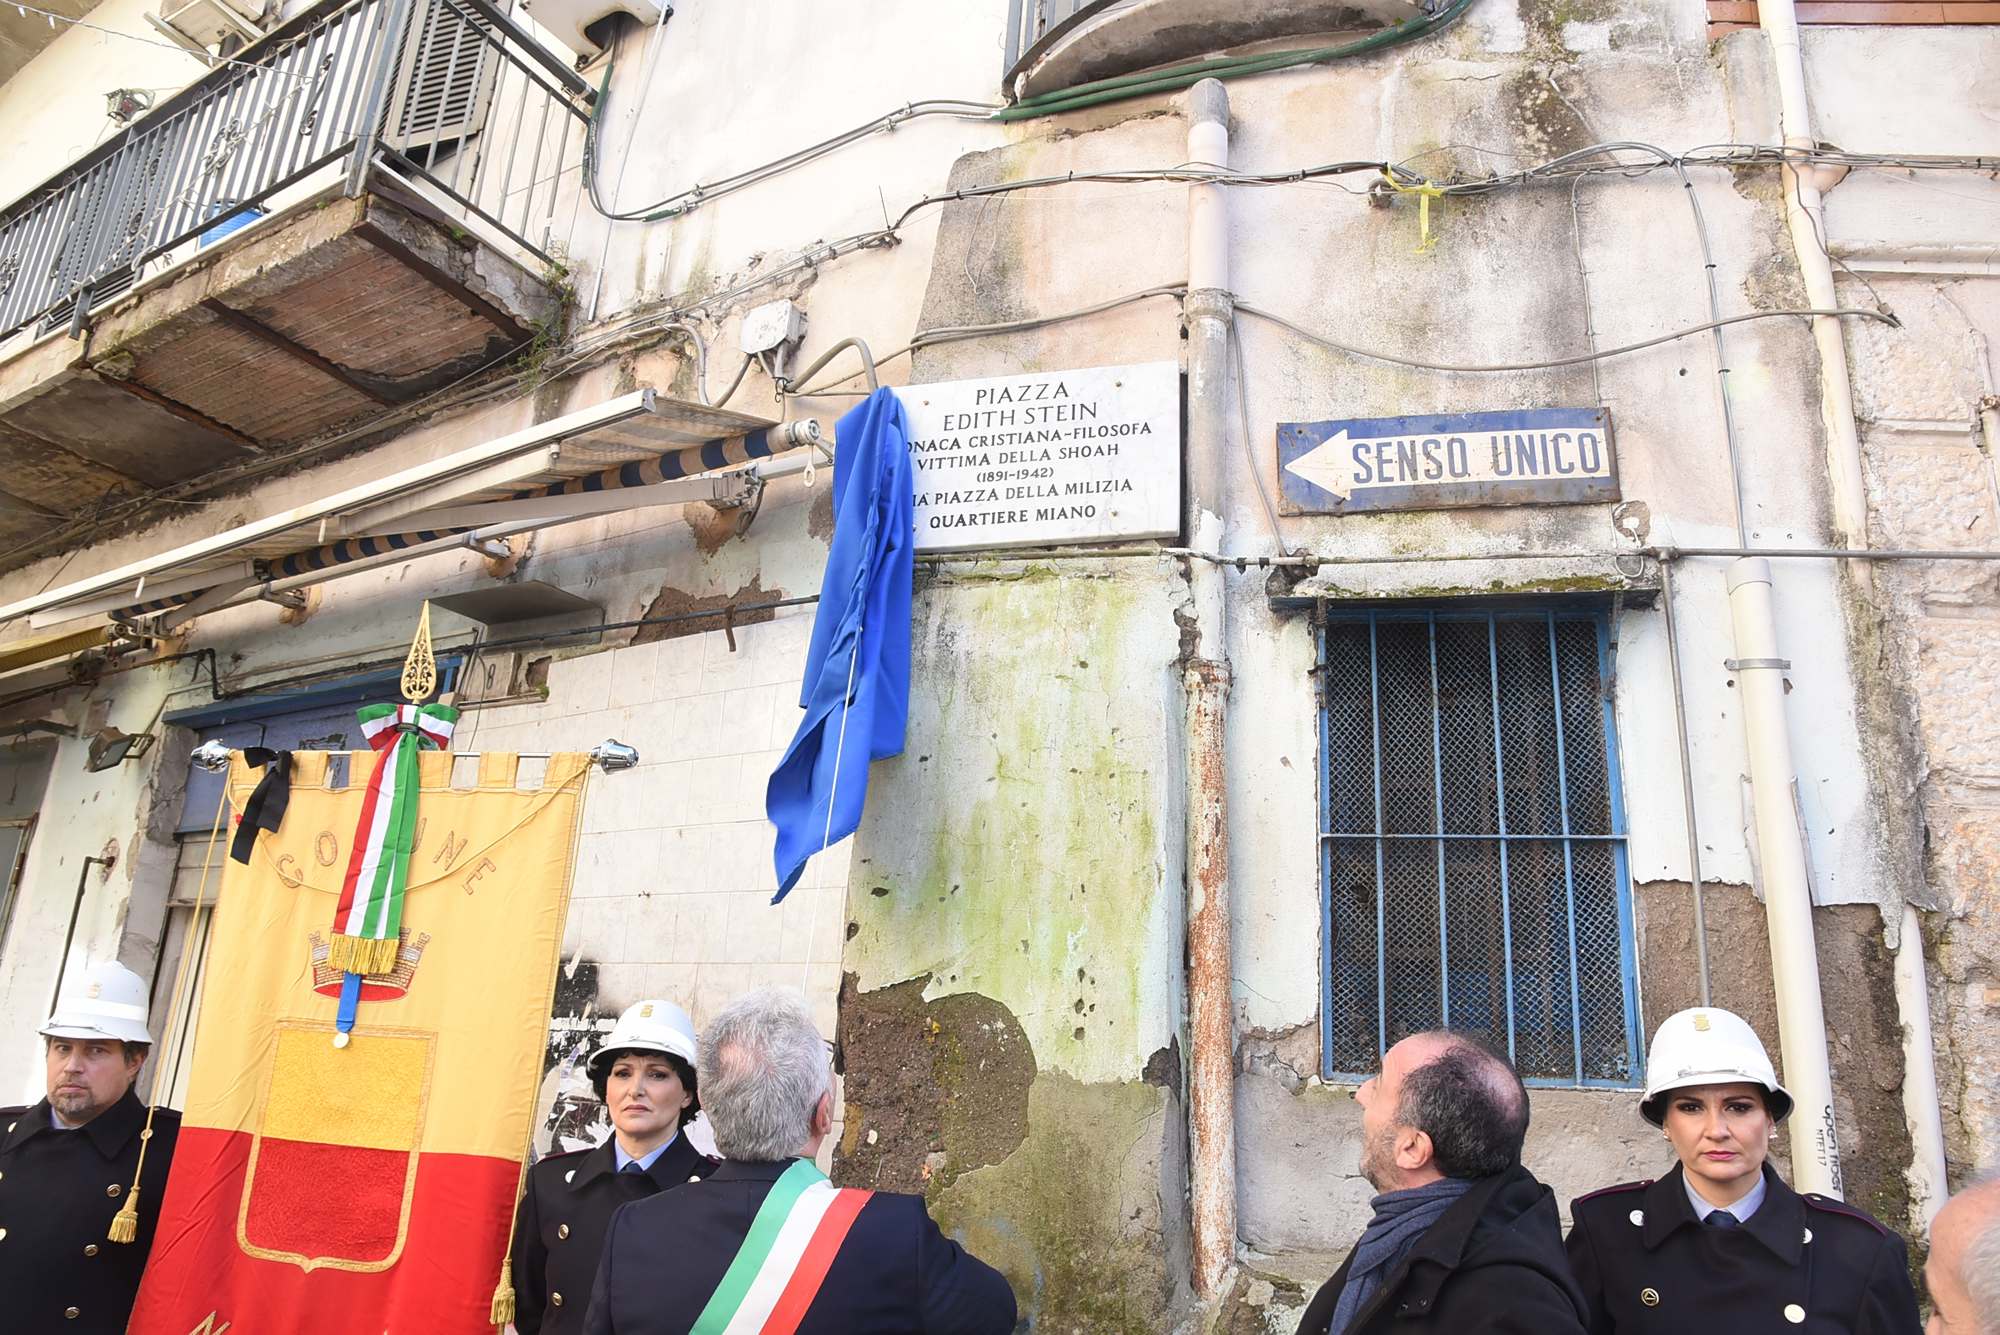 Napoli - Miano - Piazza della Milizia diventa Piazza Edith Stein nel Giorno della Memoria